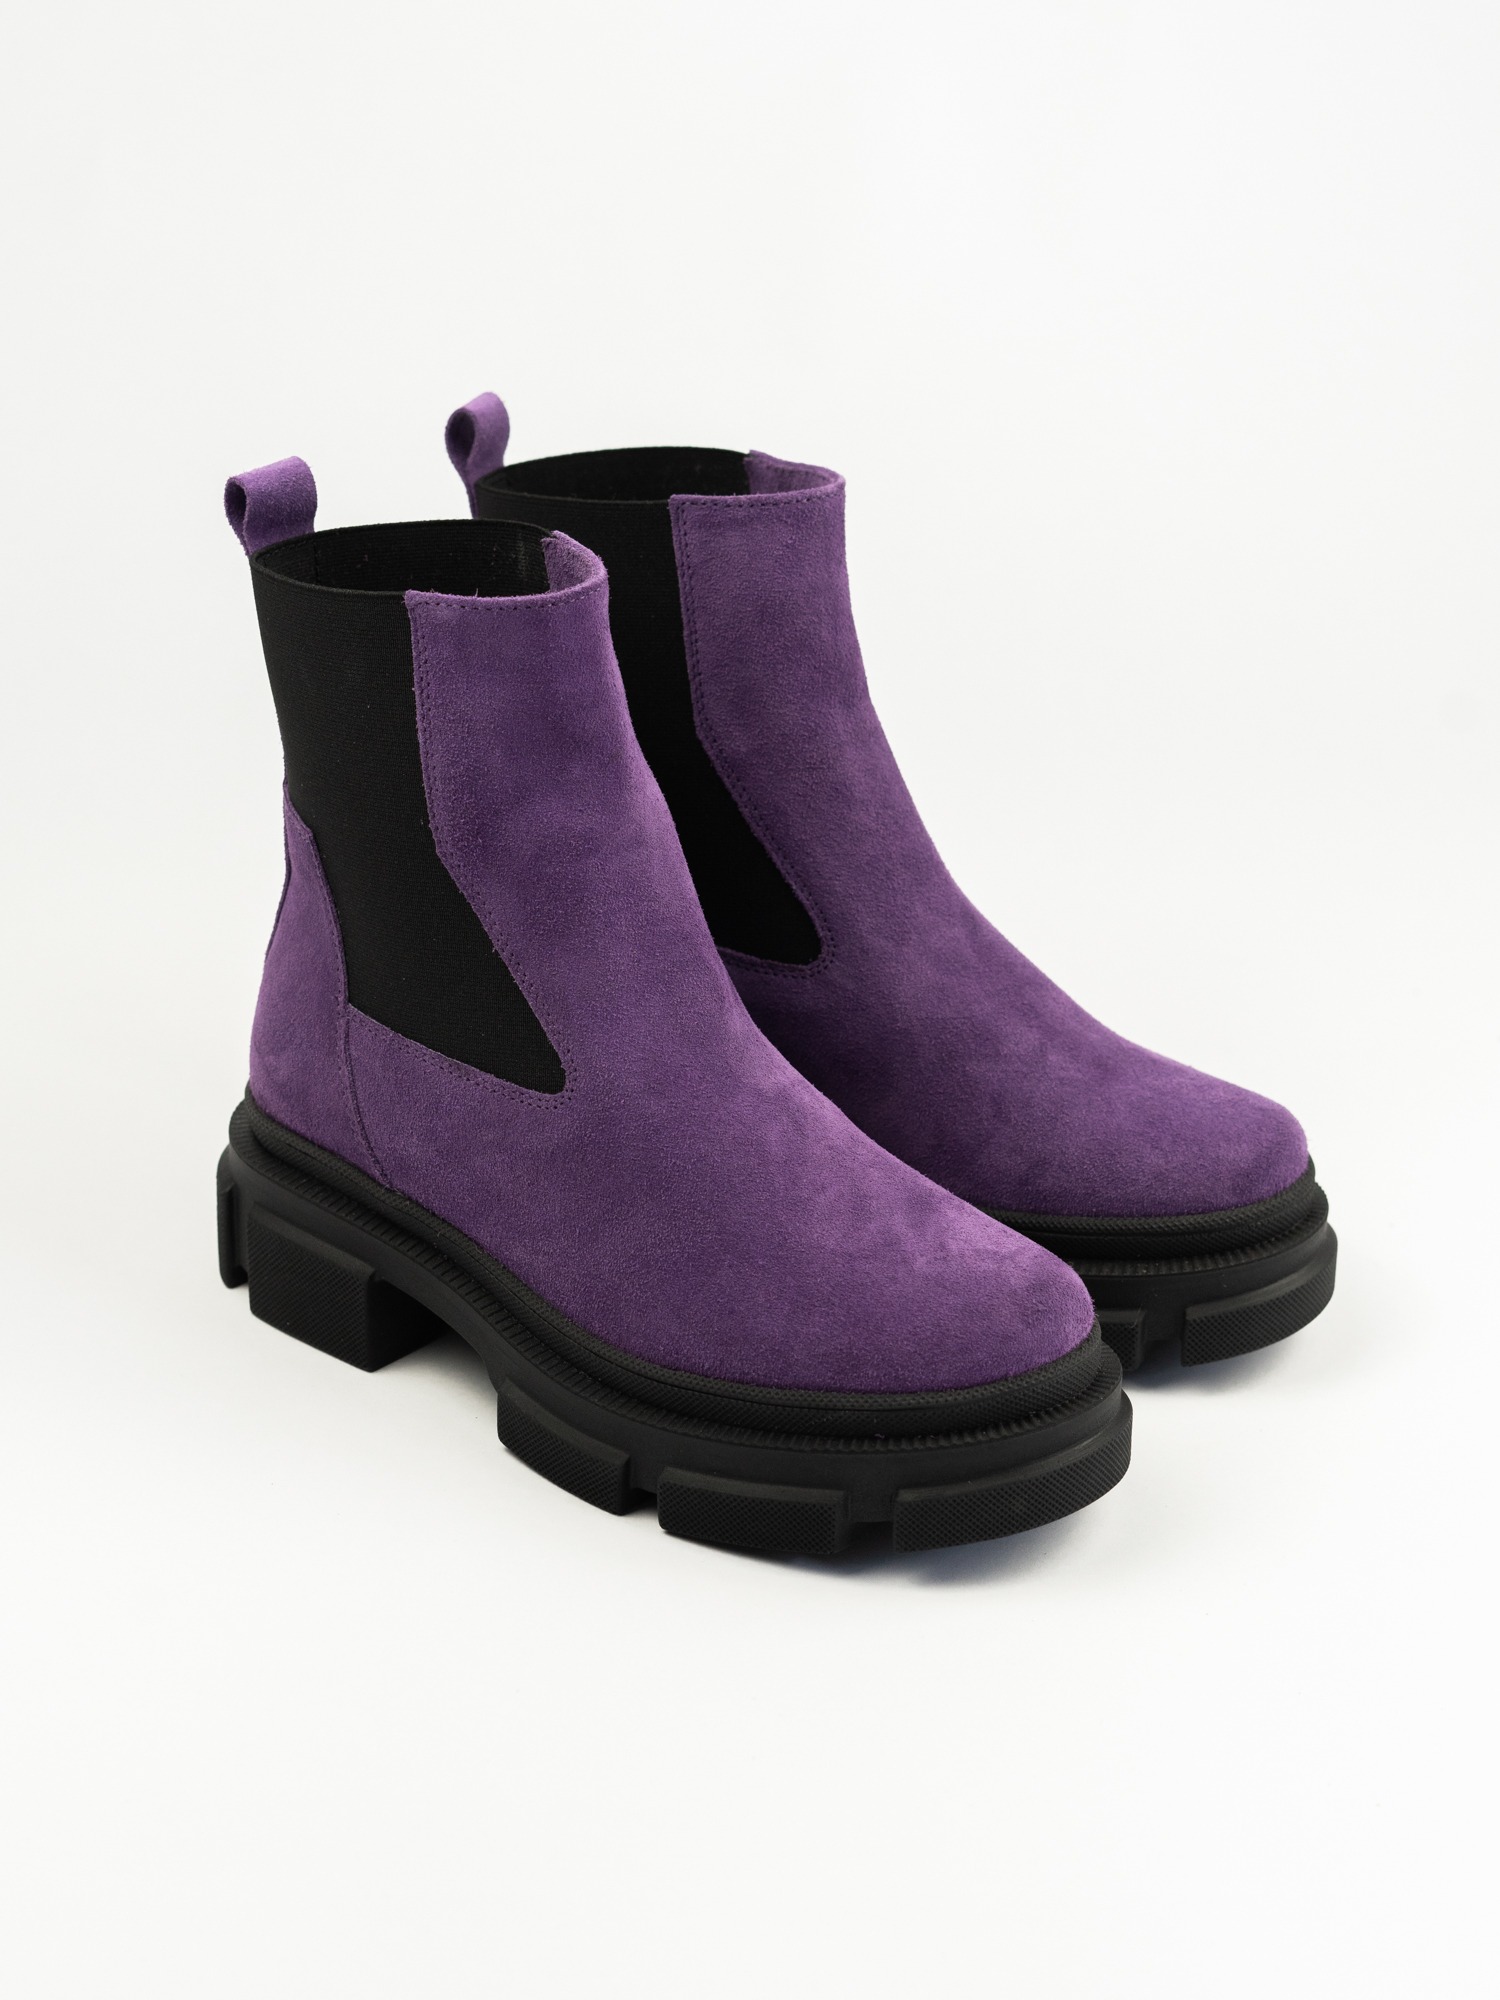 Женские ботинки  83-089-02В фиолет. велюр ворсин